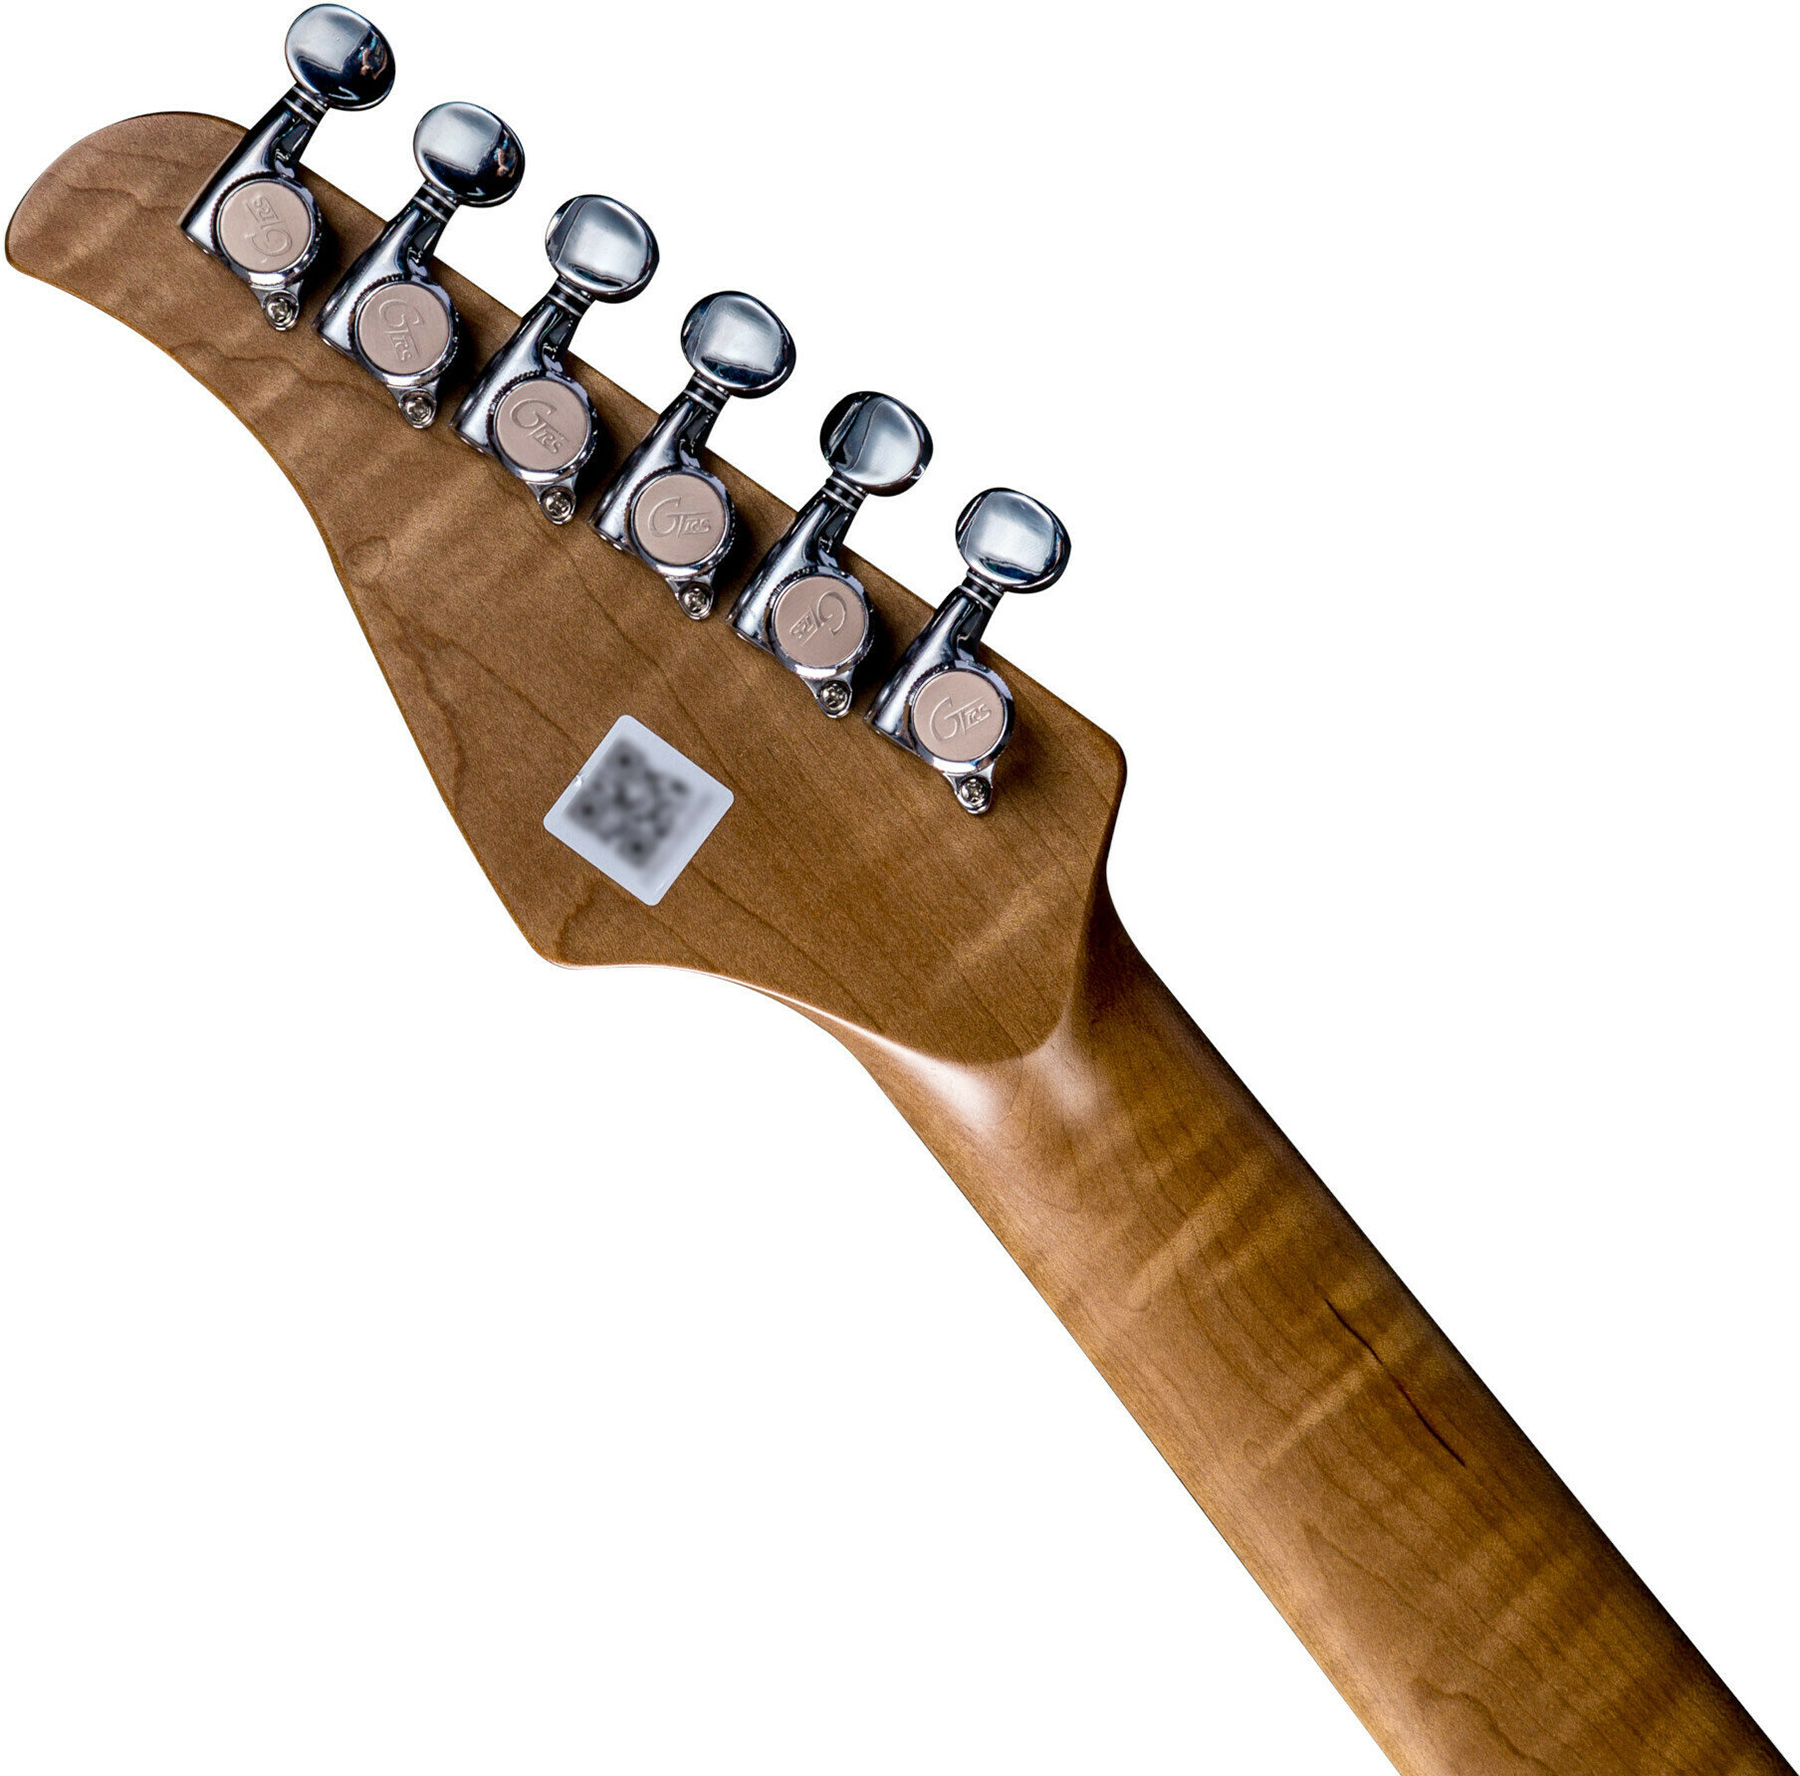 Mooer Gtrs P800 Pro Intelligent Guitar Hss Trem Rw - Olympic White - Midi-/Digital-/Modeling Gitarren - Variation 5